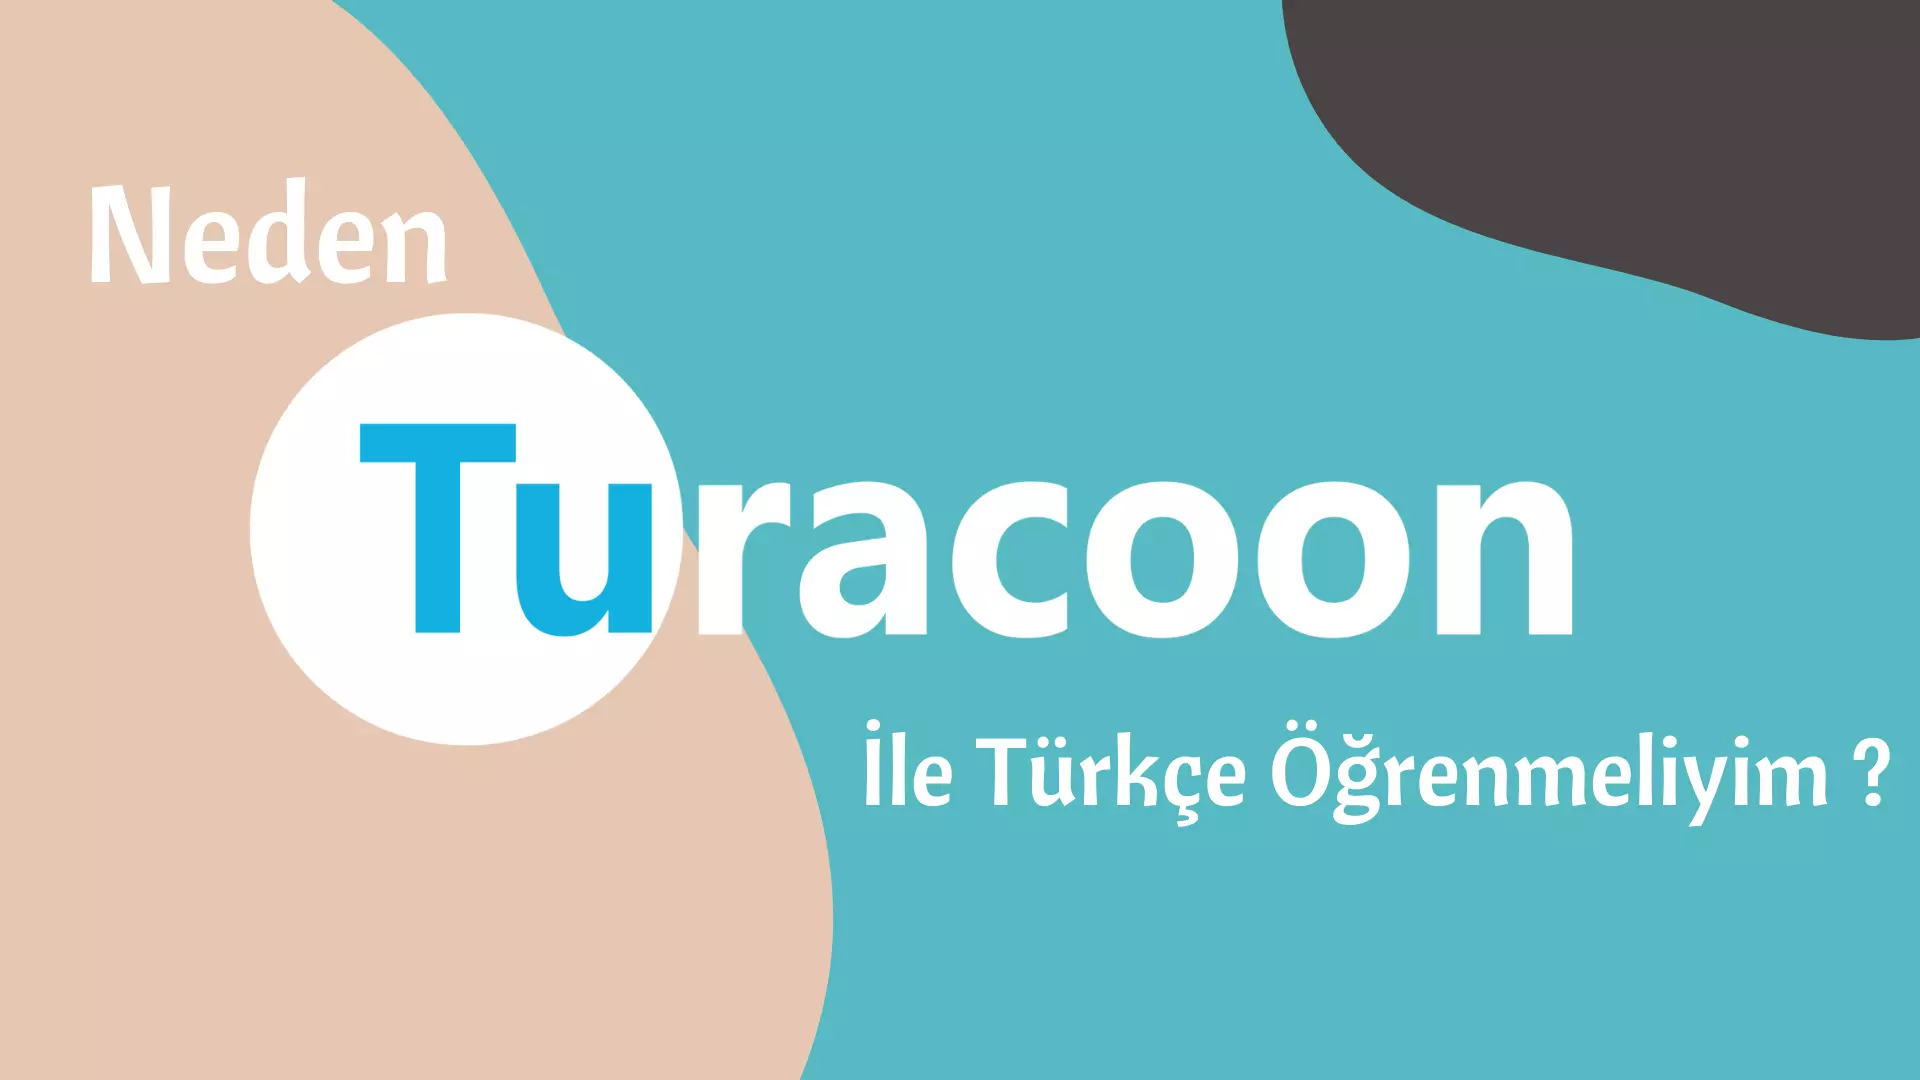 Neden Turacoon İle Türkçe Öğrenmeliyim ?